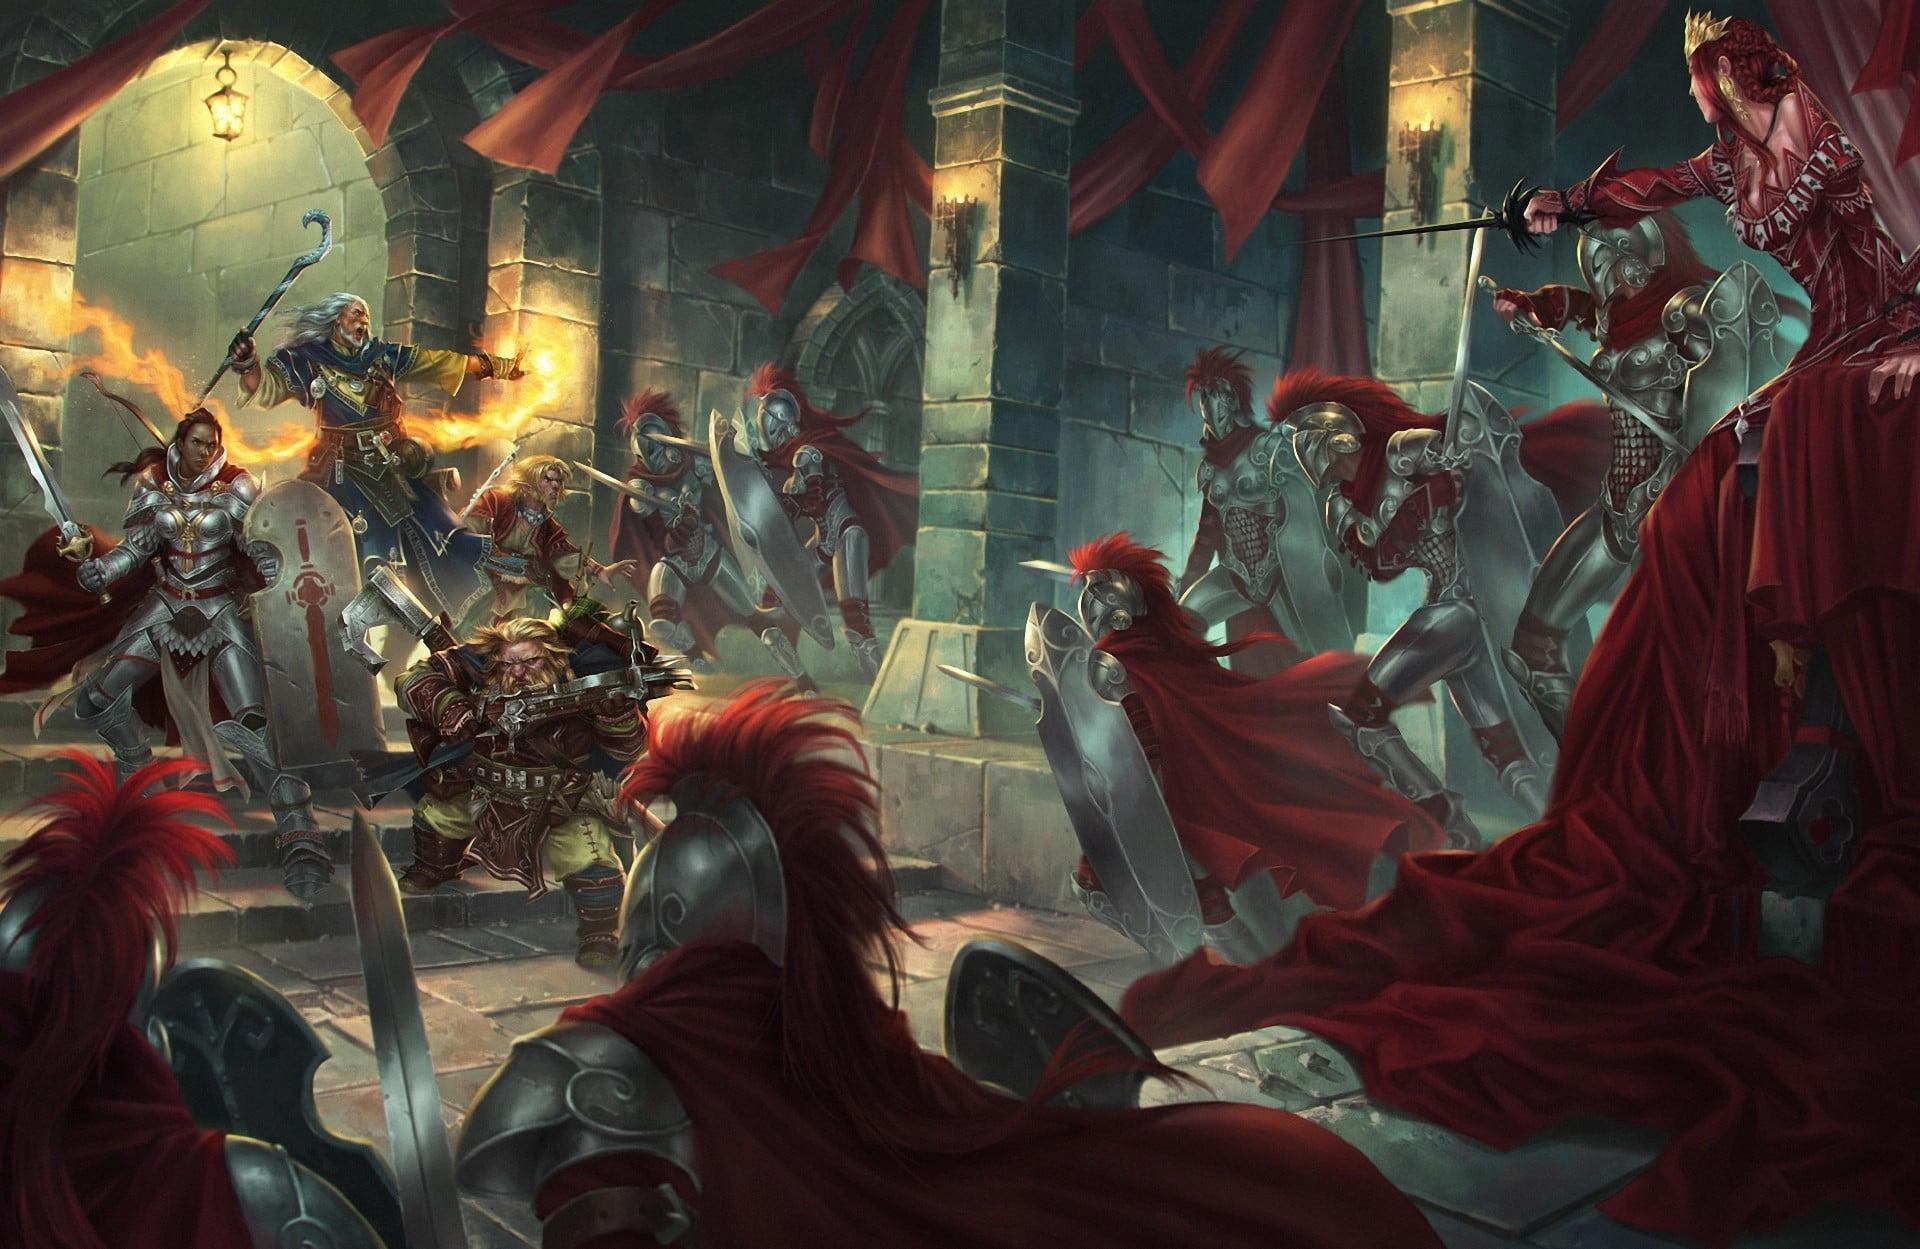 Knights illustration, fantasy art, artwork, Pathfinder HD